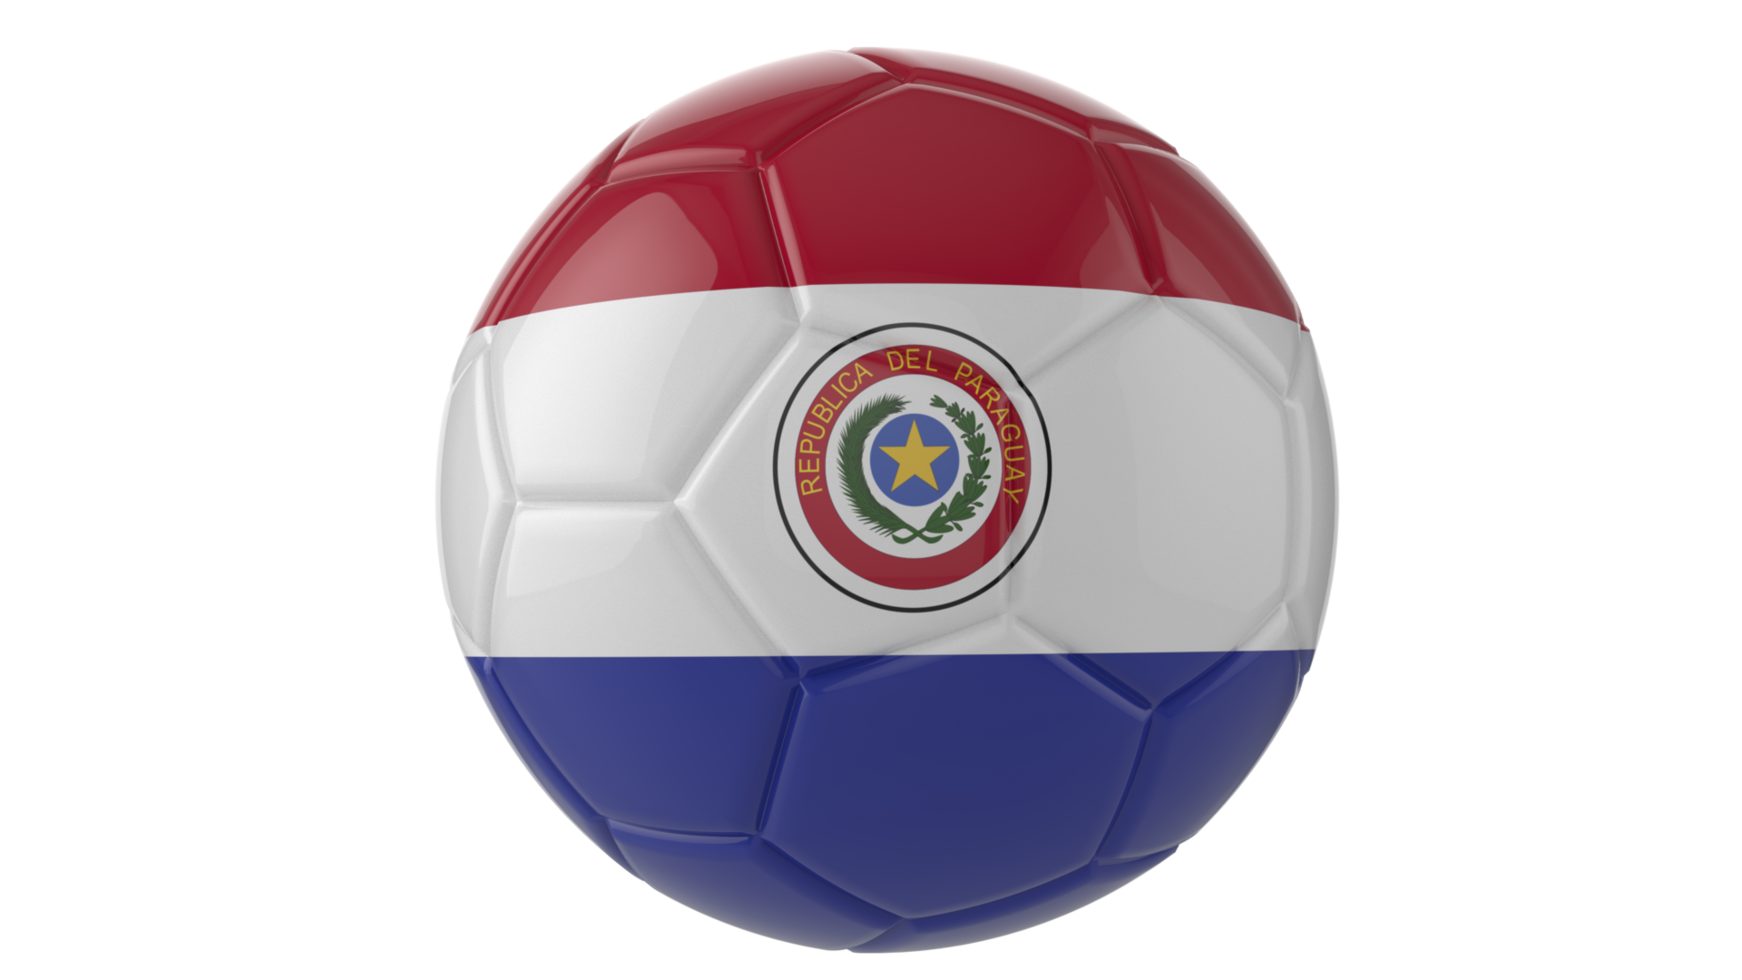 Balón de fútbol realista en 3d con la bandera de paraguay aislado sobre fondo png transparente